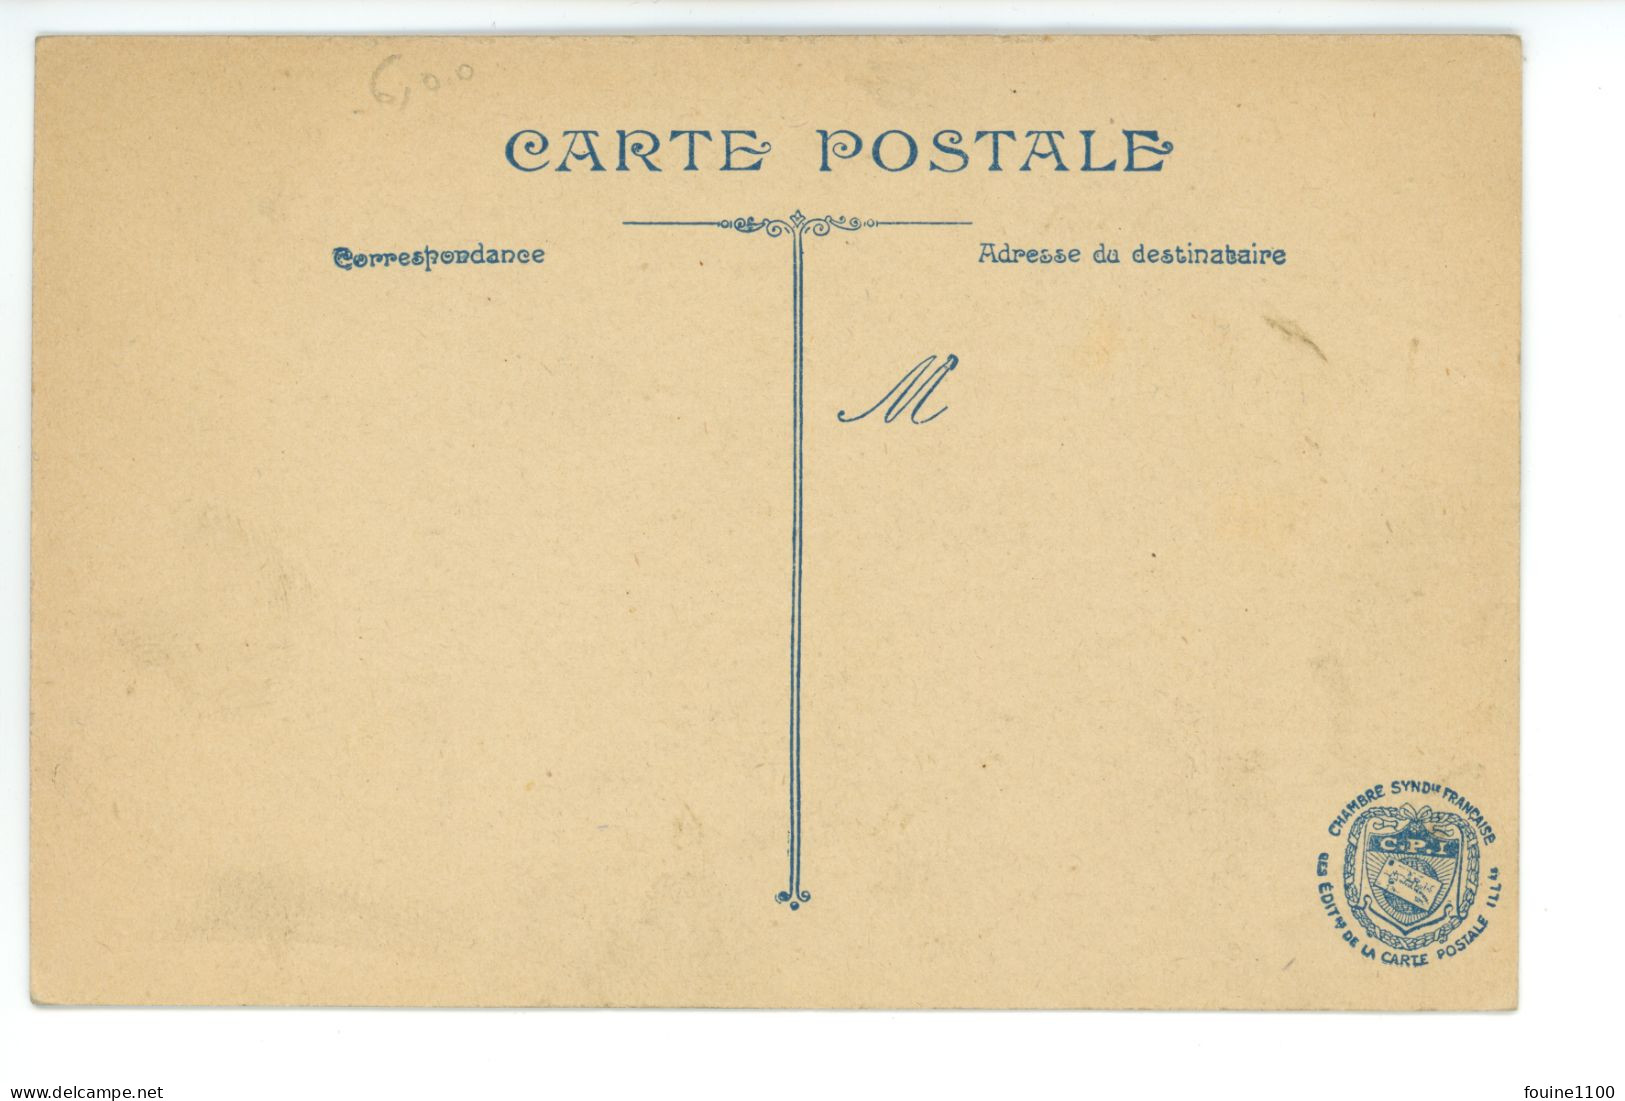 Carte Patriotique ( Drapeaux Drapeau Canon De 75 ) + Timbre Militaire 29e Artillerie De Campagne ( Camille Bellanger ) - Patriotic